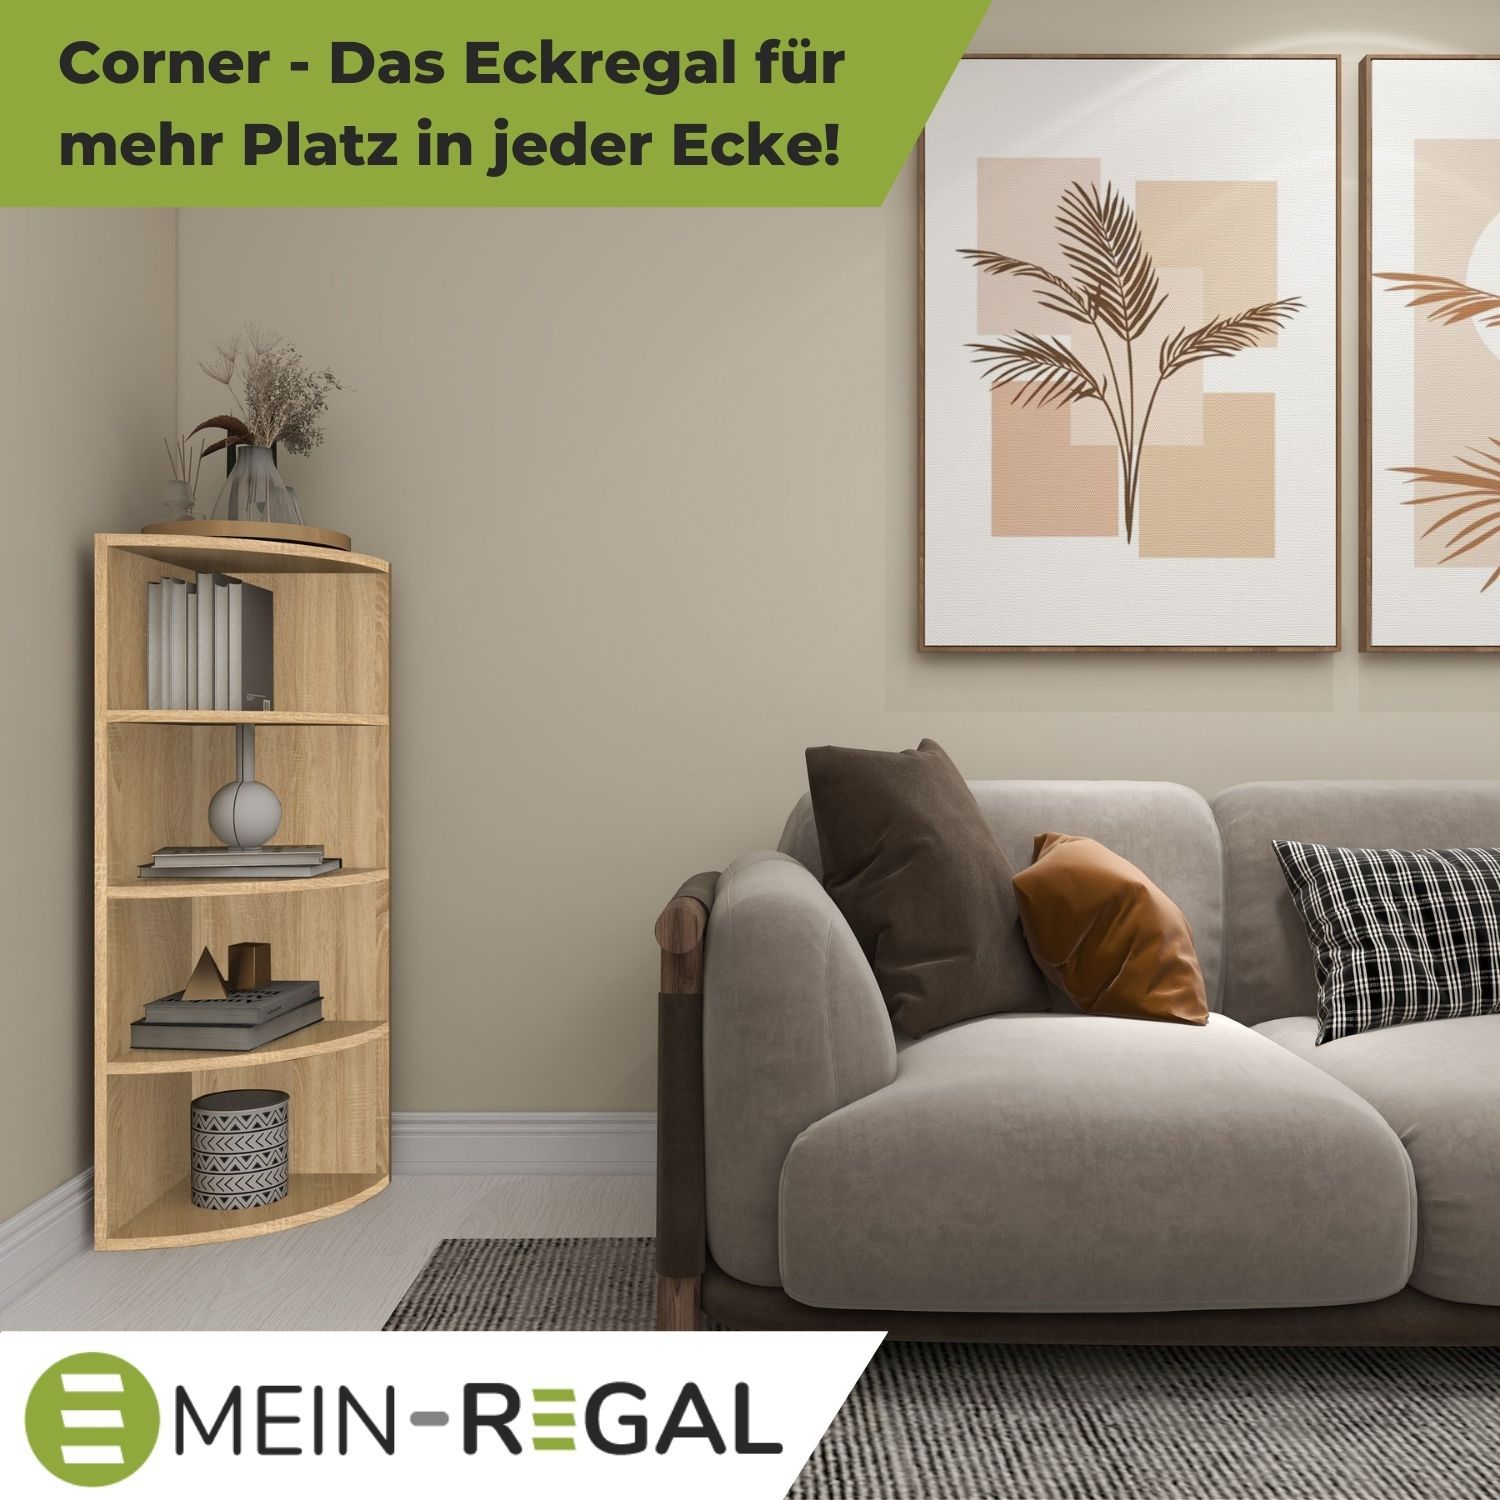 Eckregal Corner 120 in der Farbe Natur im Wohnzimmer